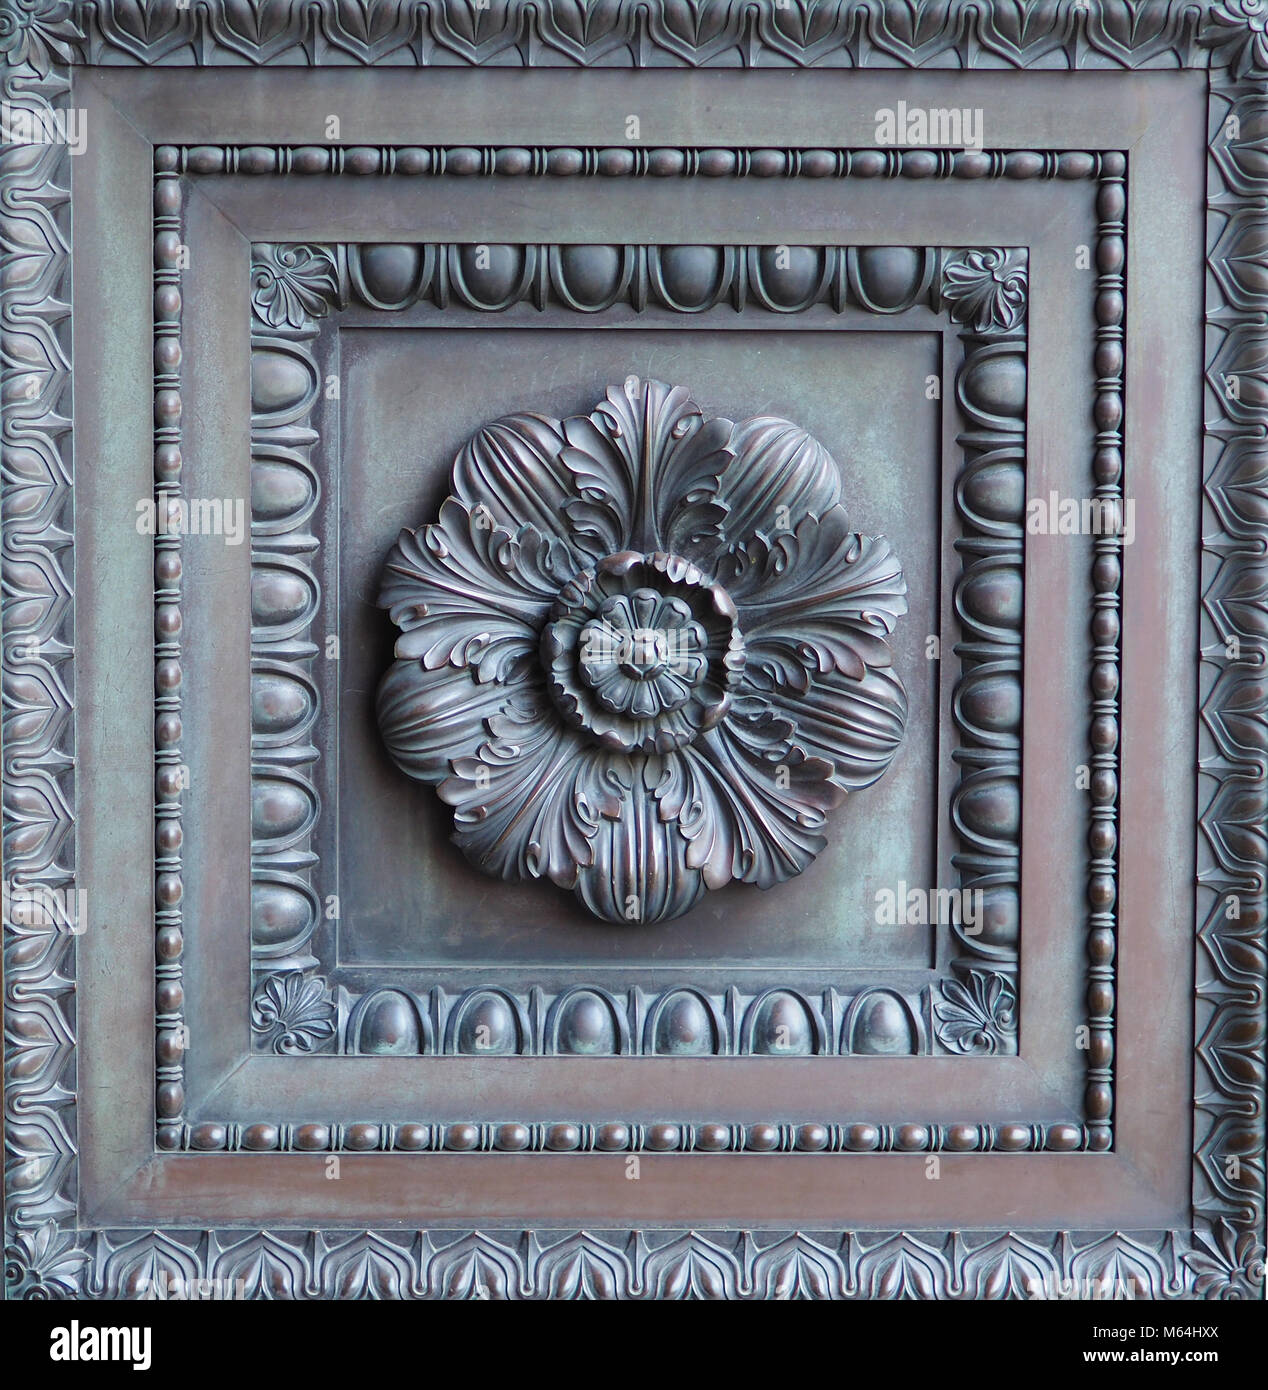 Vintage adornados de panel de puerta de bronce. Insertar la puerta de bronce de diseño floral con detalles complejos y marcos, clásico estilo Art Deco. Foto de stock